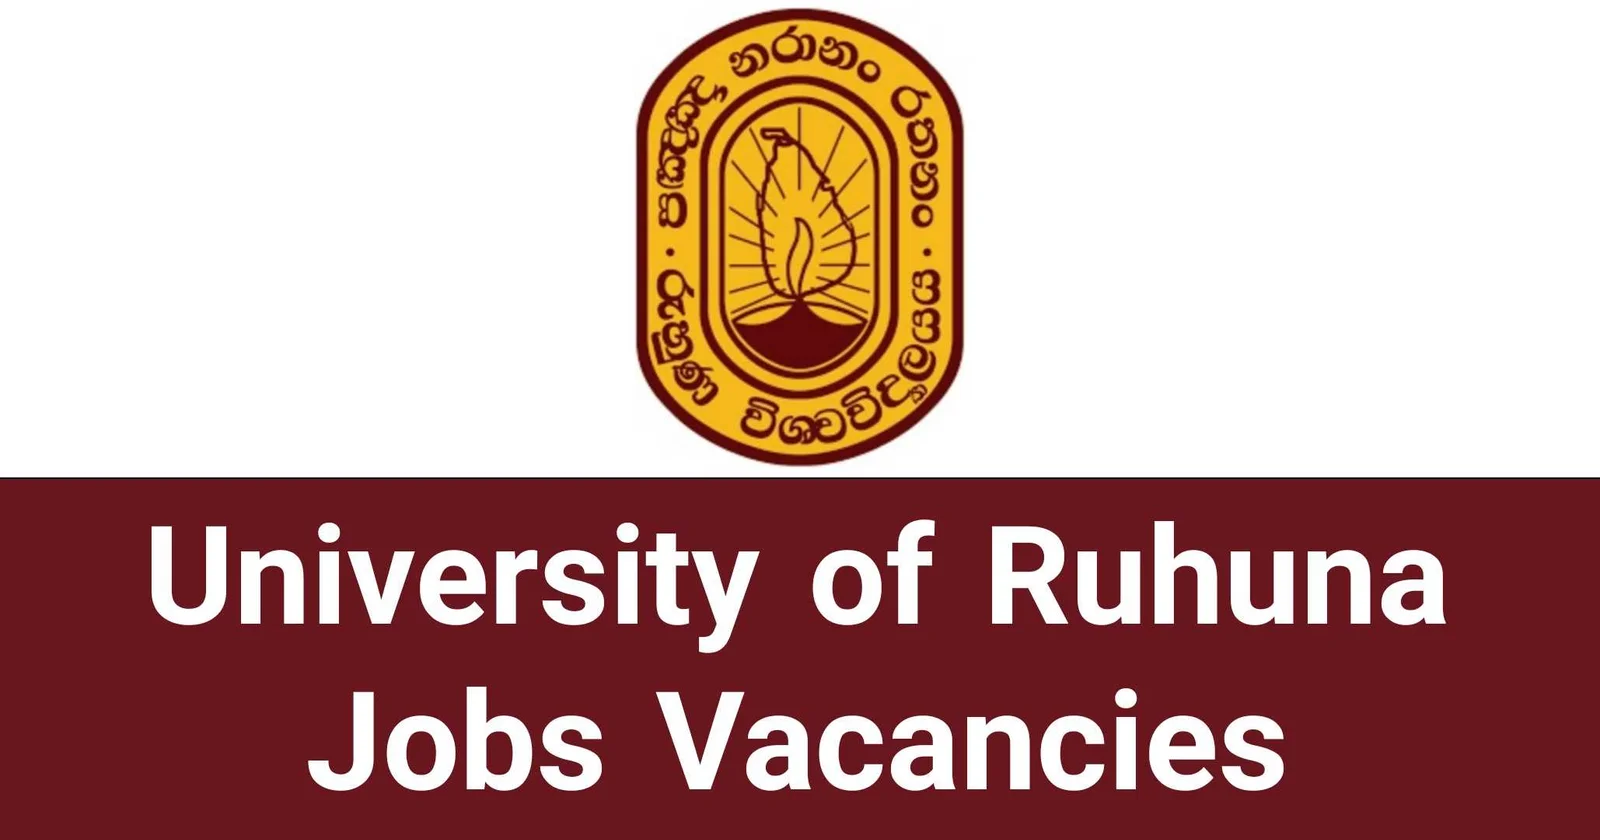 University of Ruhuna Jobs Vacancies Recruitments Applications